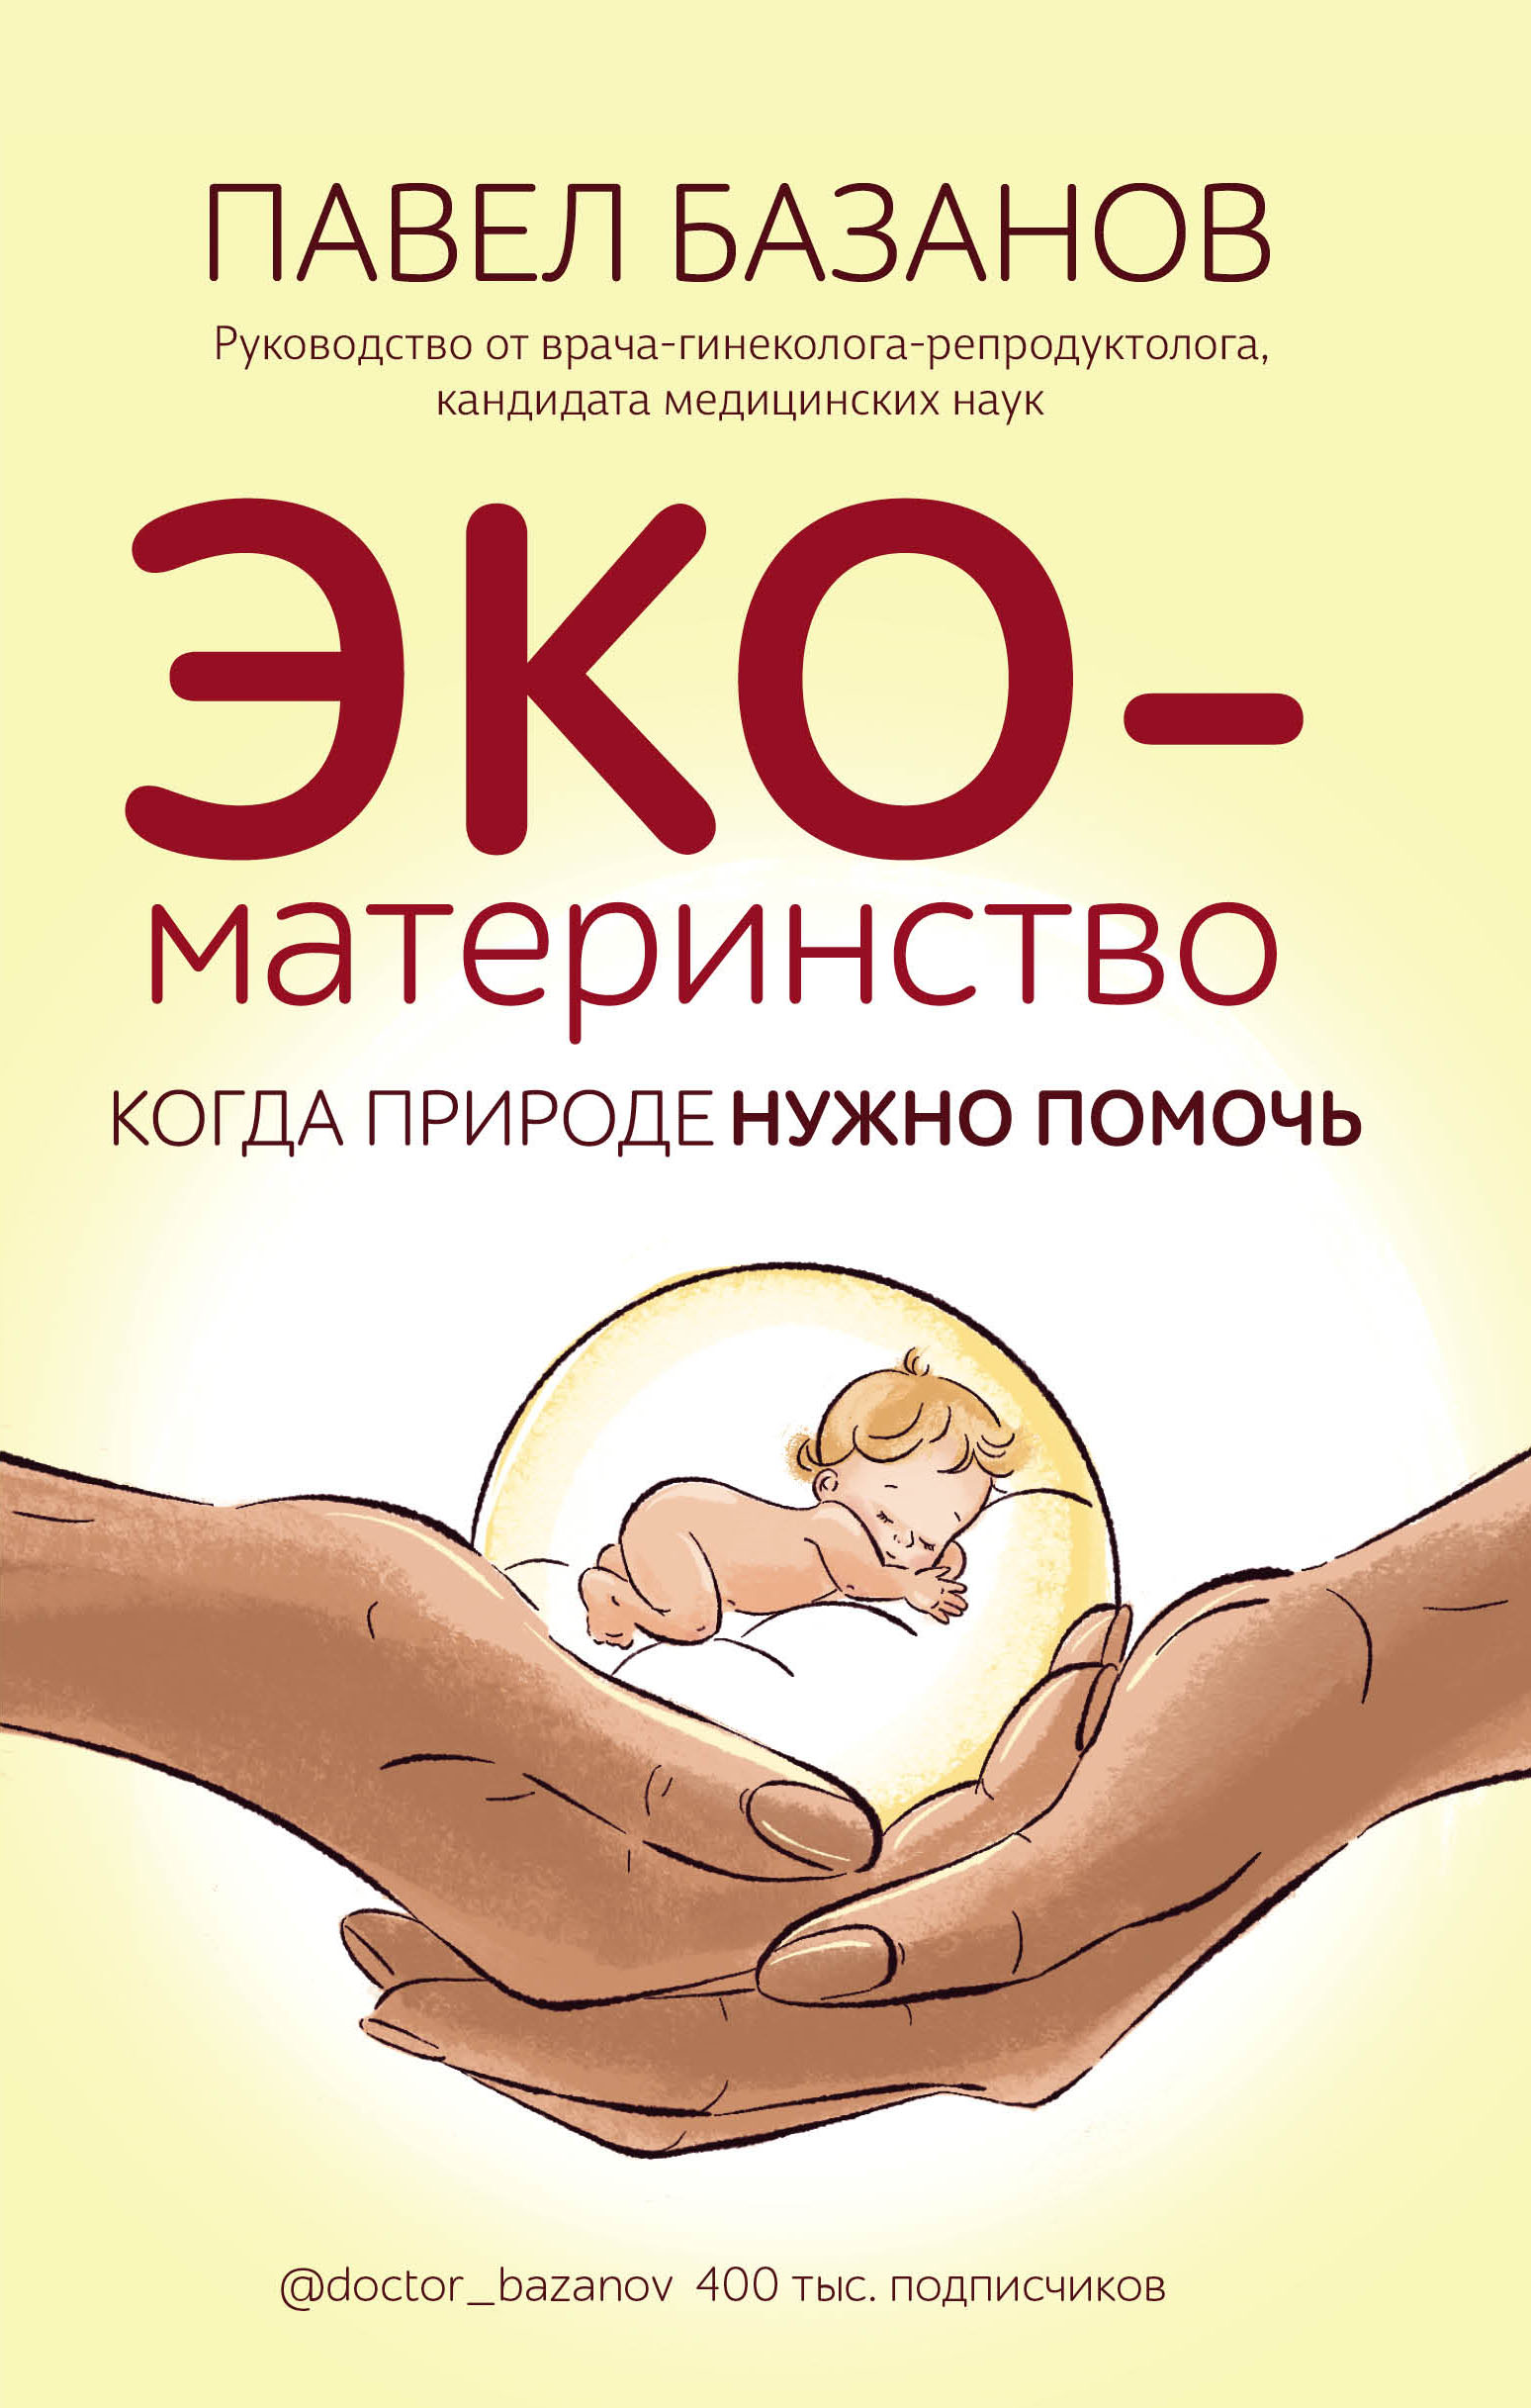 ЭКО-материнство. Когда природе нужно помочь, Павел Базанов – скачать книгу  fb2, epub, pdf на ЛитРес